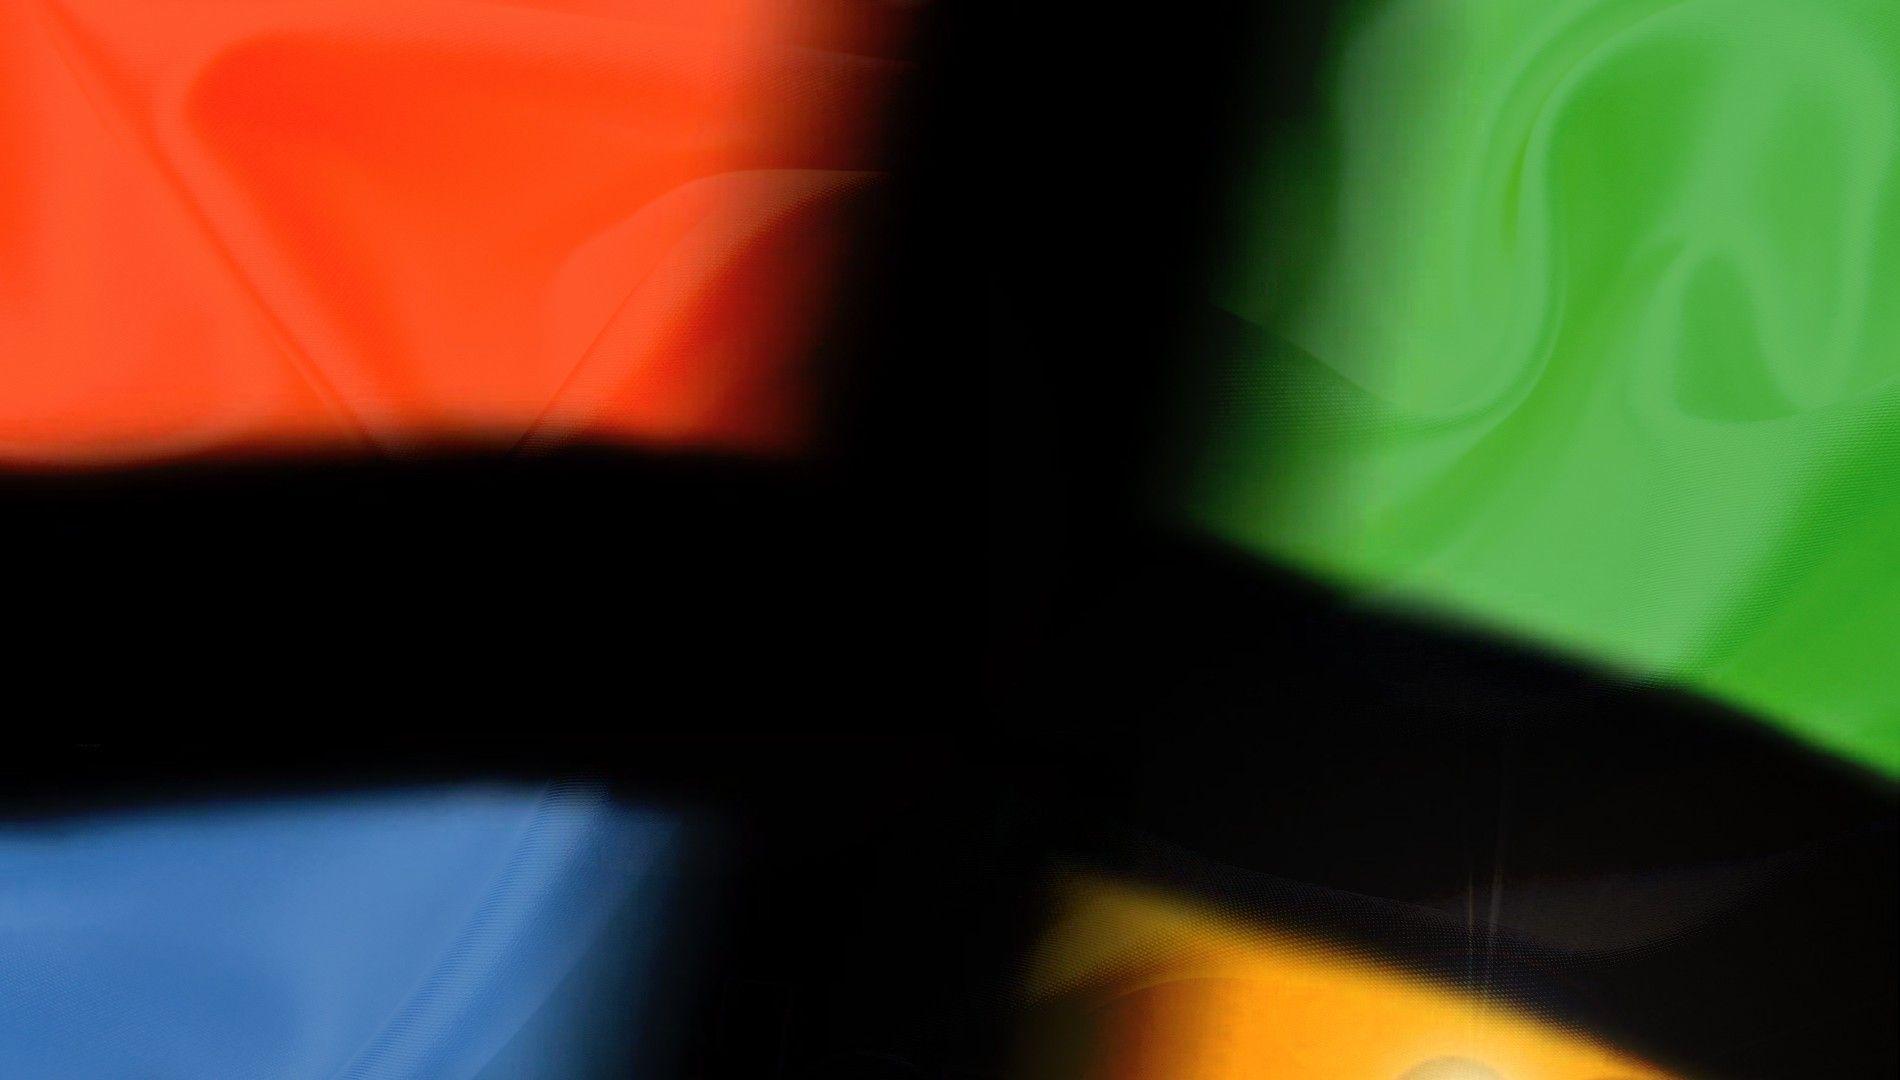 Black Windows Red Logo - Wallpaper : black, red, logo, green, yellow, blue, orange